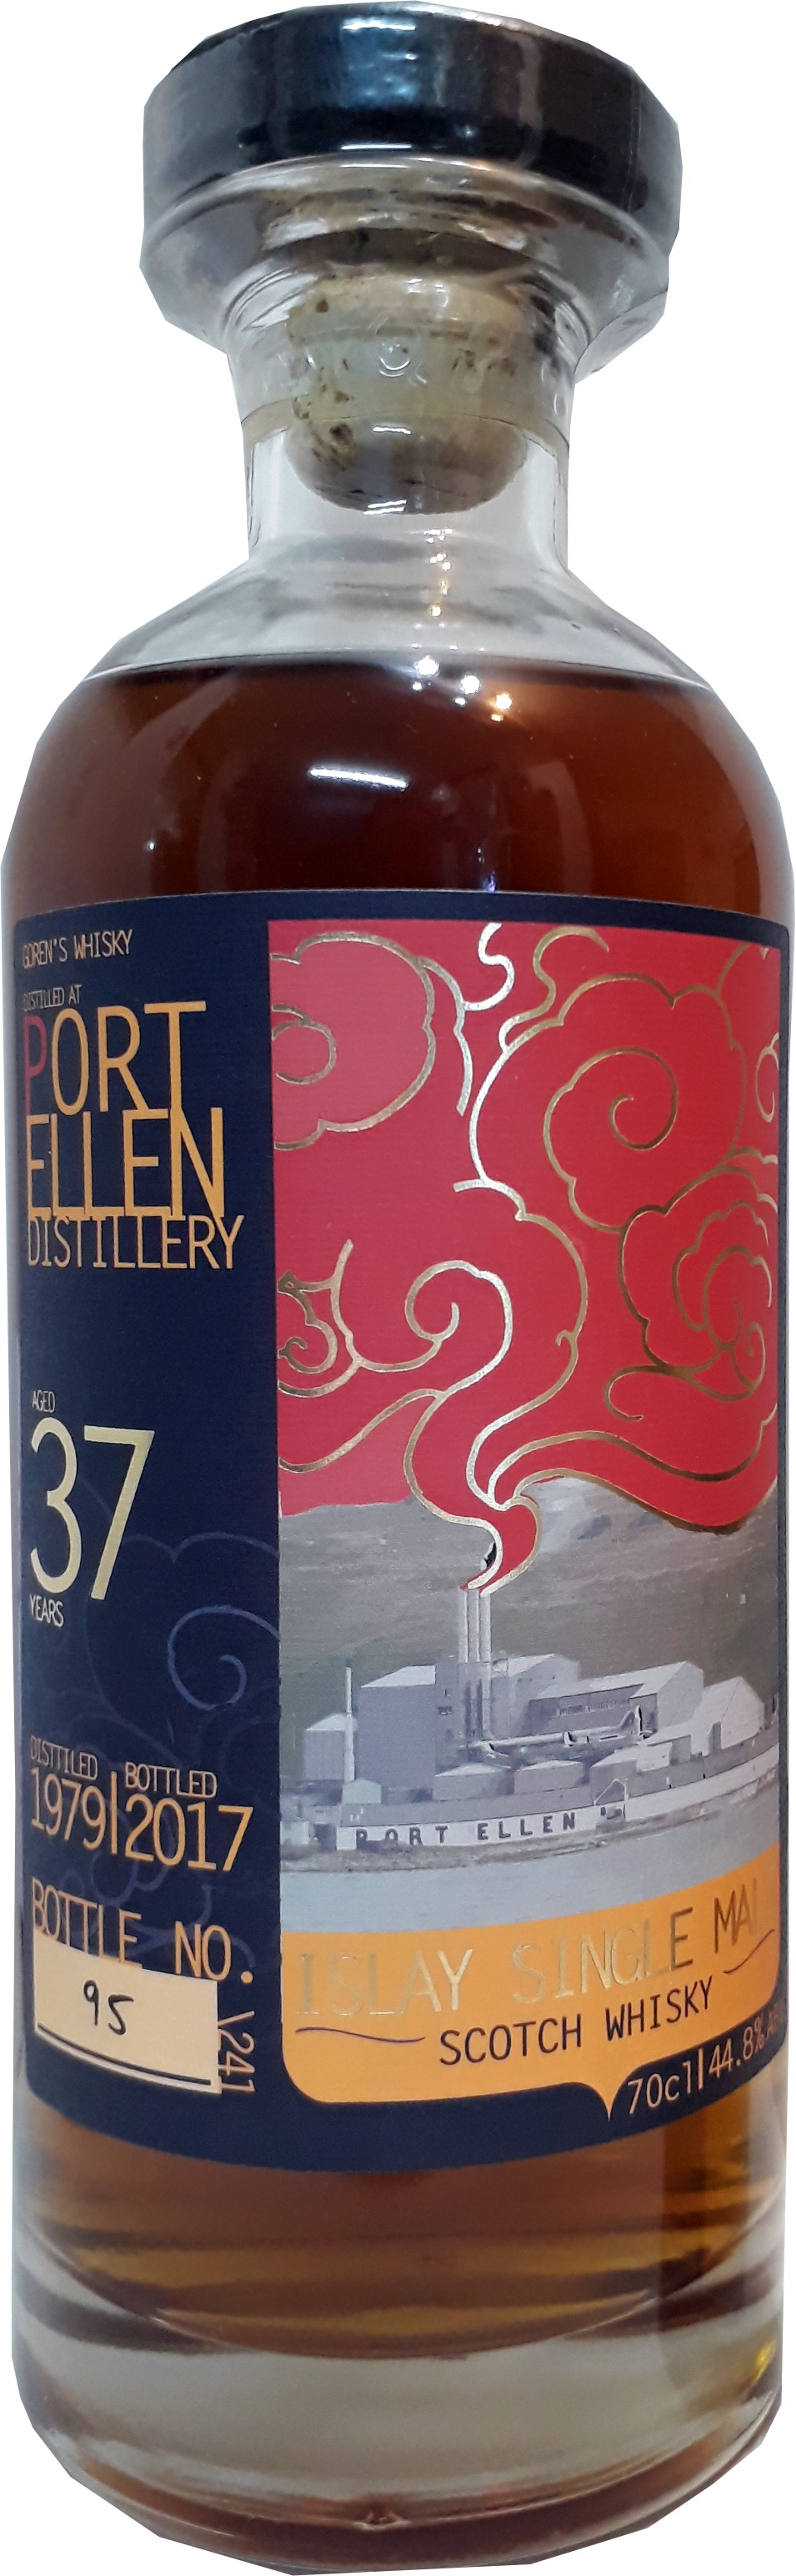 פורט אלן 37 שנה | Port Ellen 37 y.o